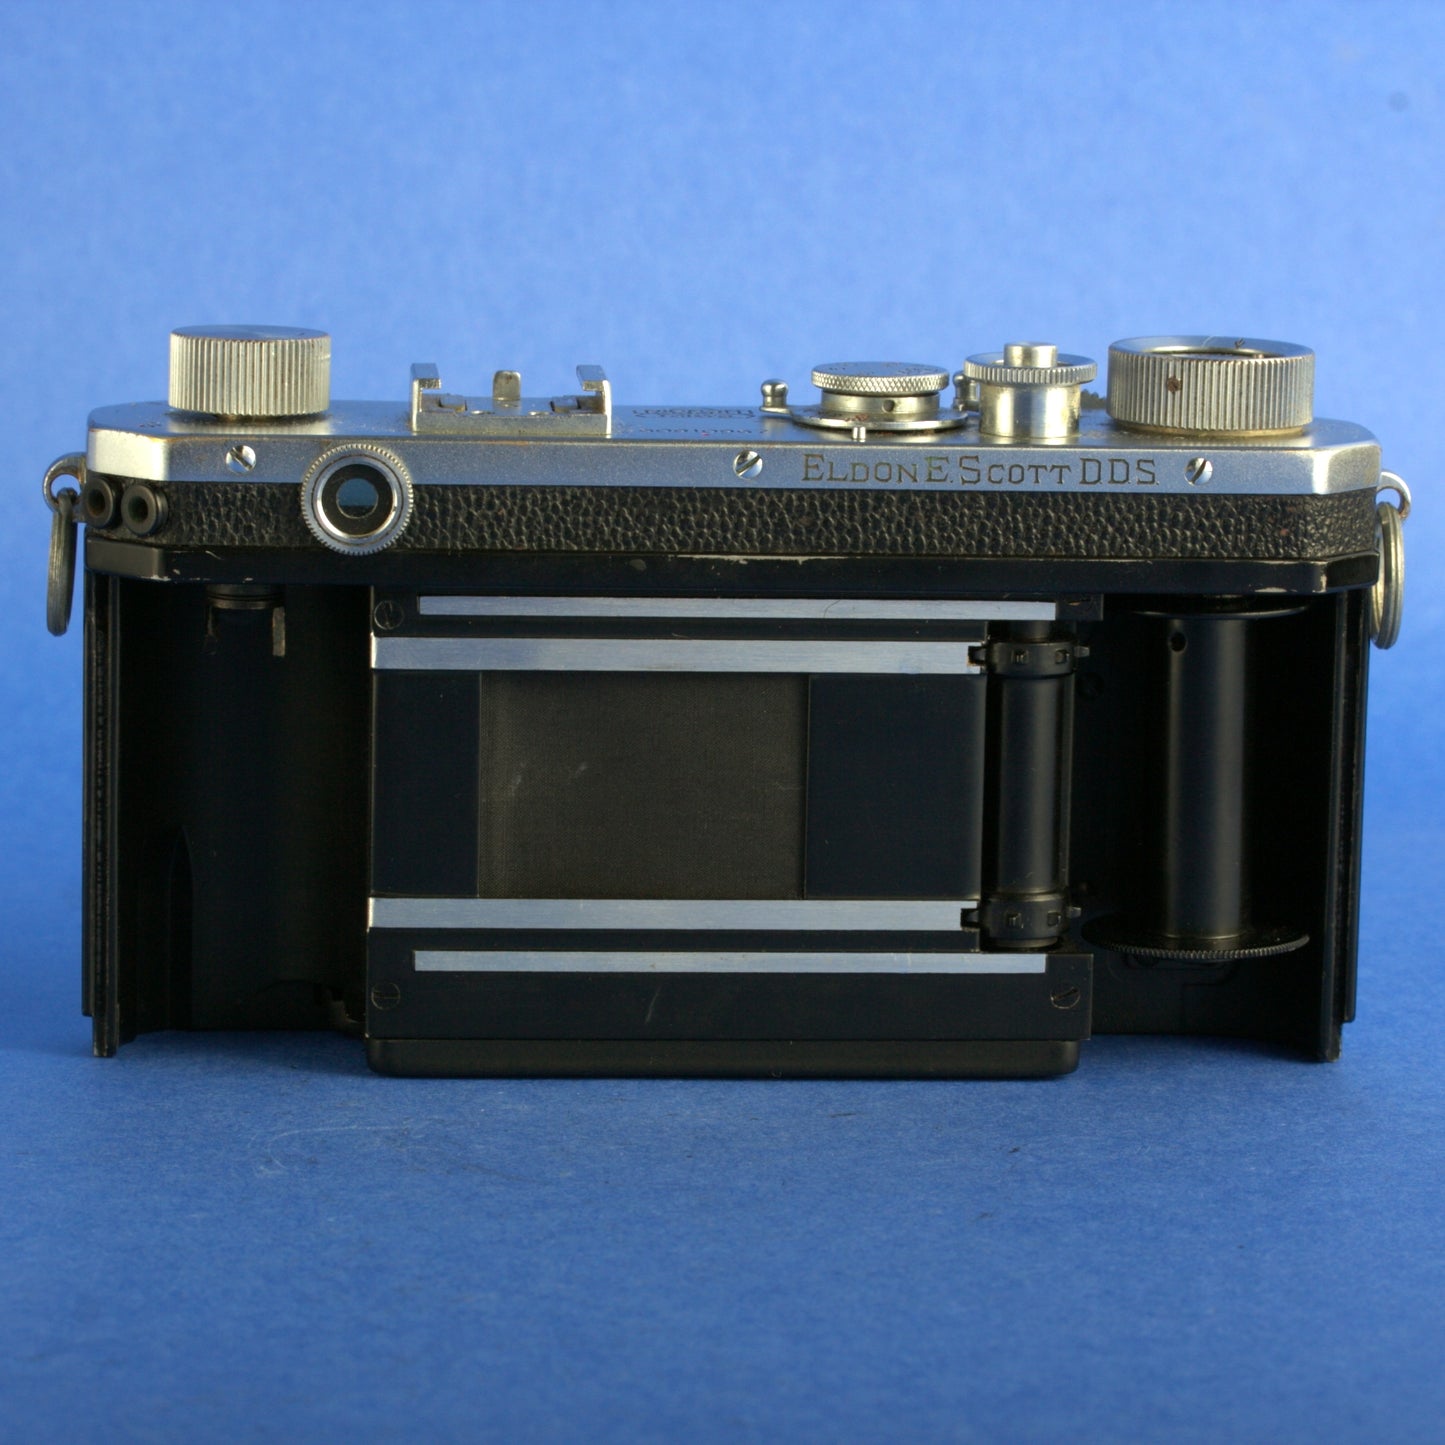 Nikon S Rangefinder Camera 8 Digit Serial